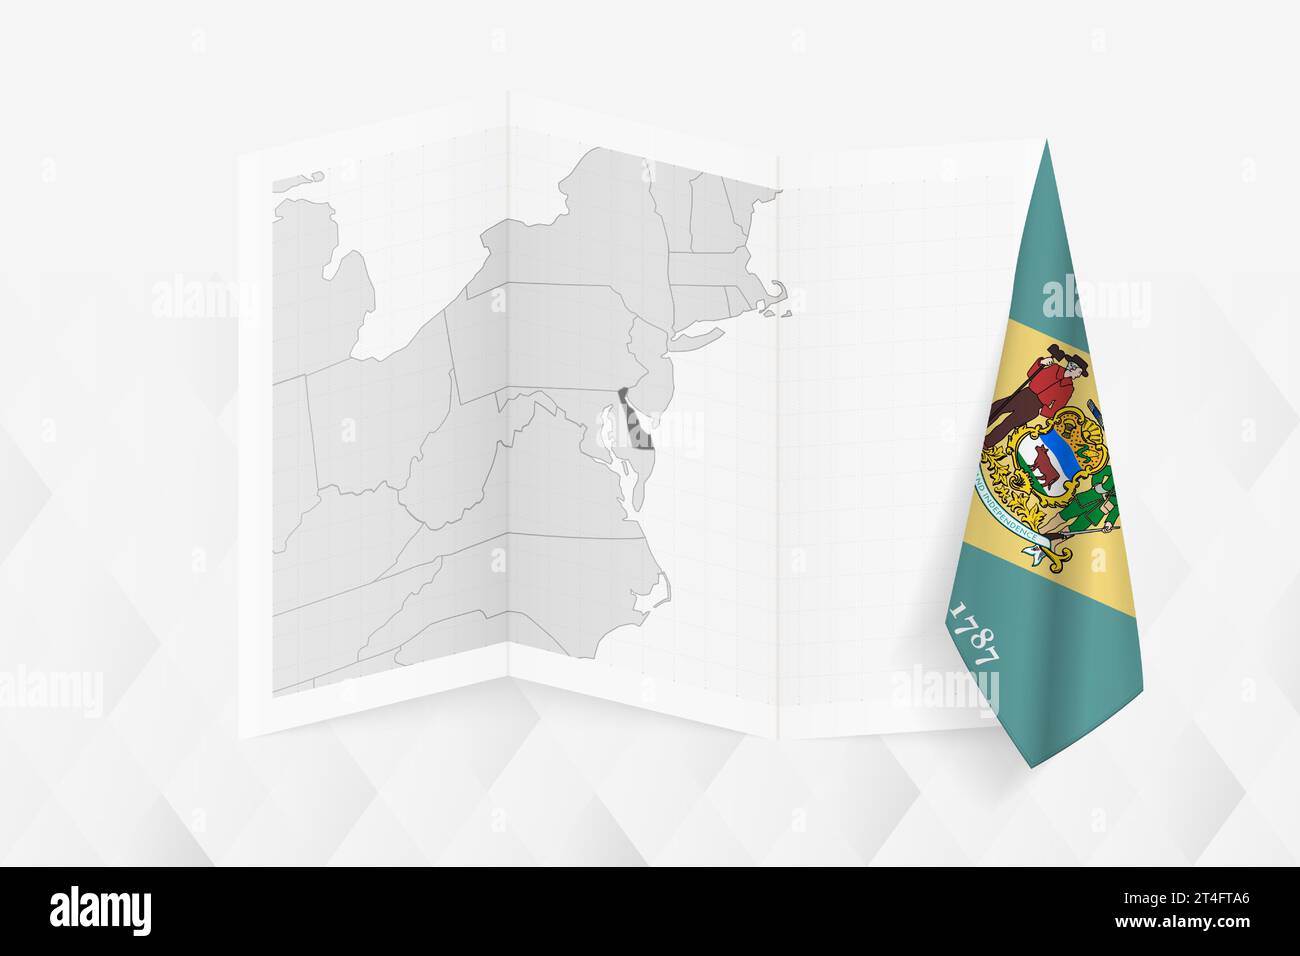 Eine graue Karte von Delaware mit einer hängenden Delaware-Flagge auf einer Seite. Vektorkarte für viele Arten von Nachrichten. Vektorabbildung. Stock Vektor